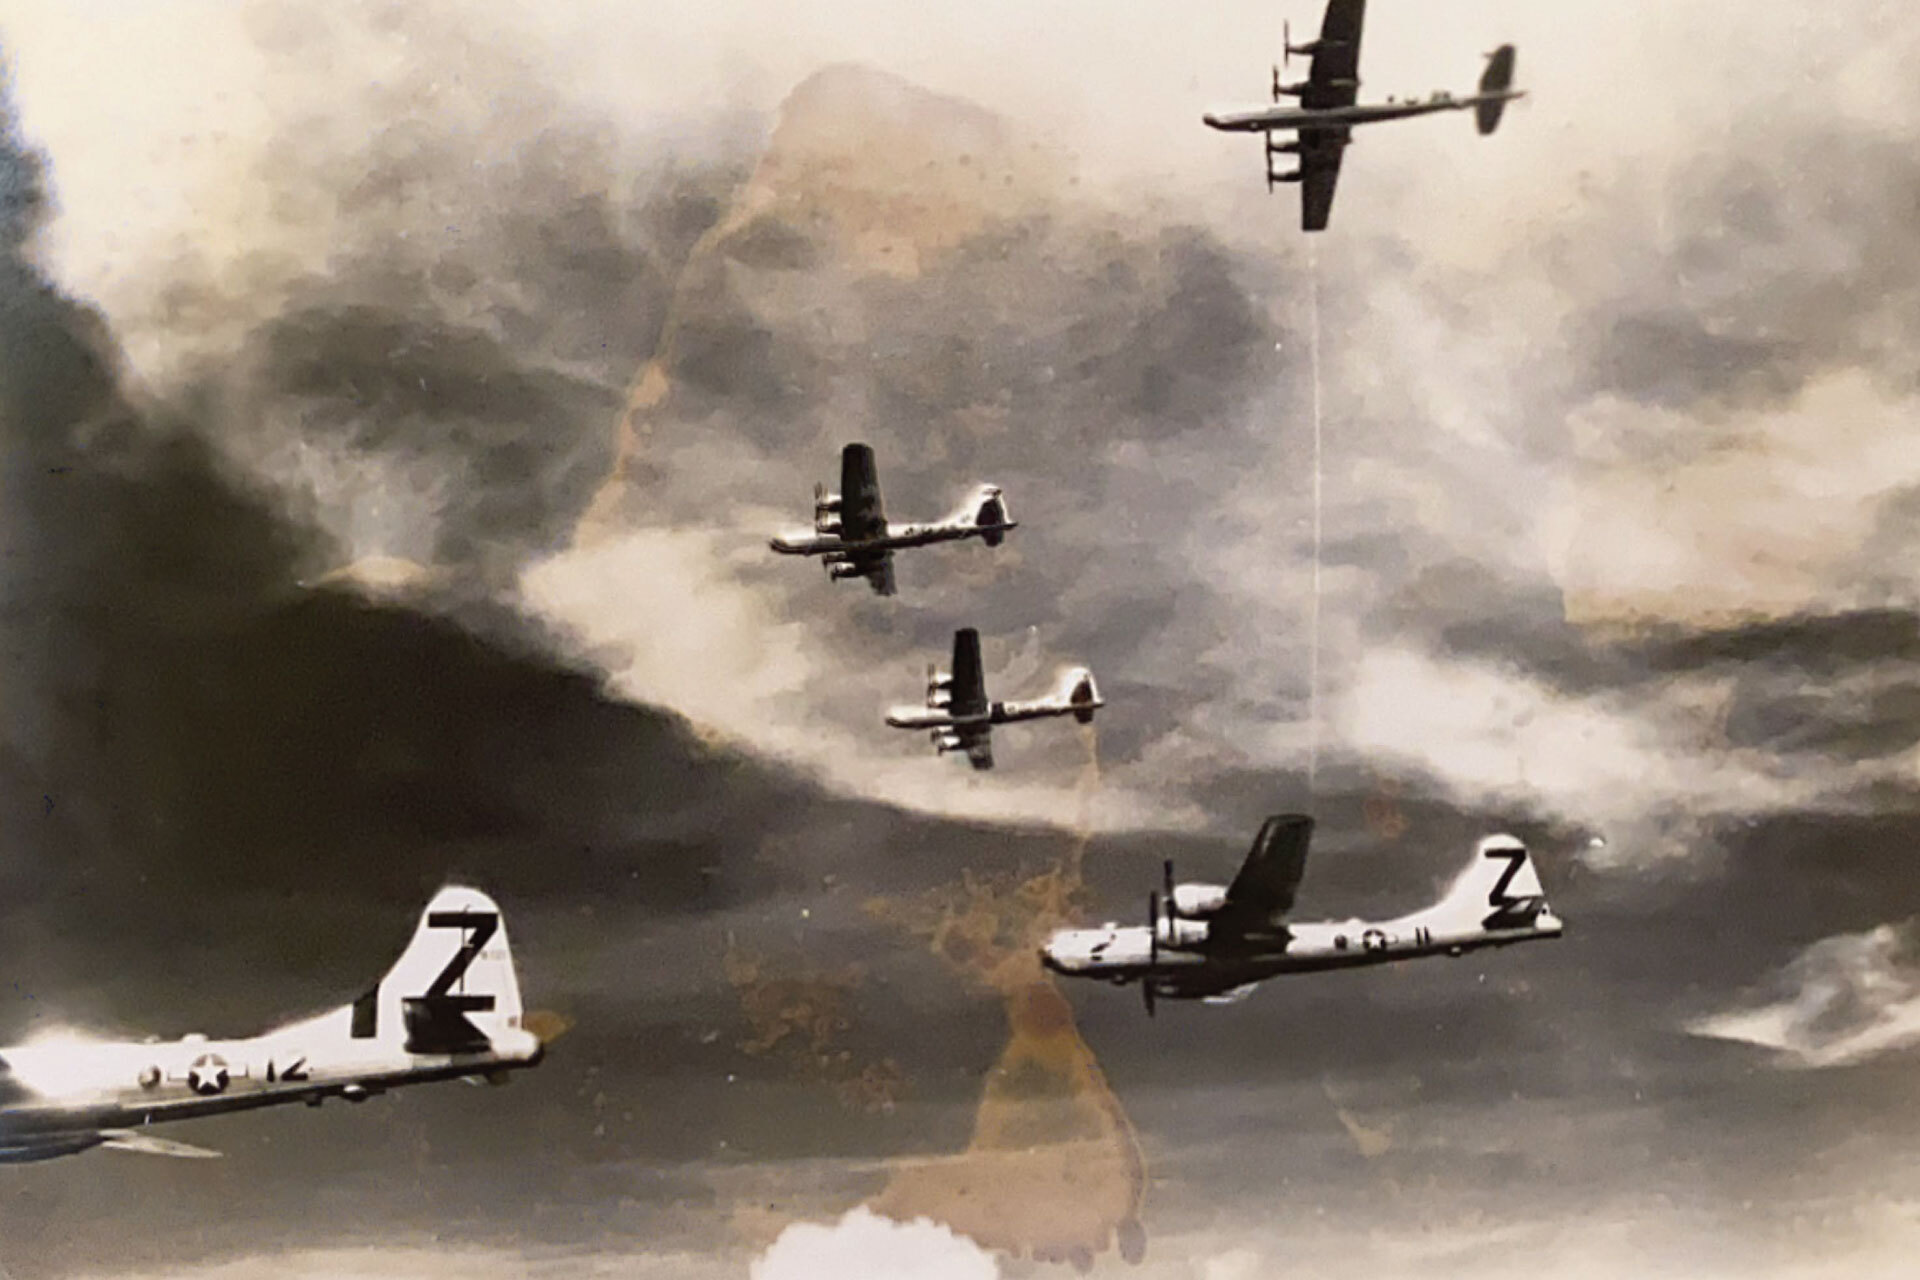 Gulnande skannat foto som visar flygande flygplan från andra världskriget